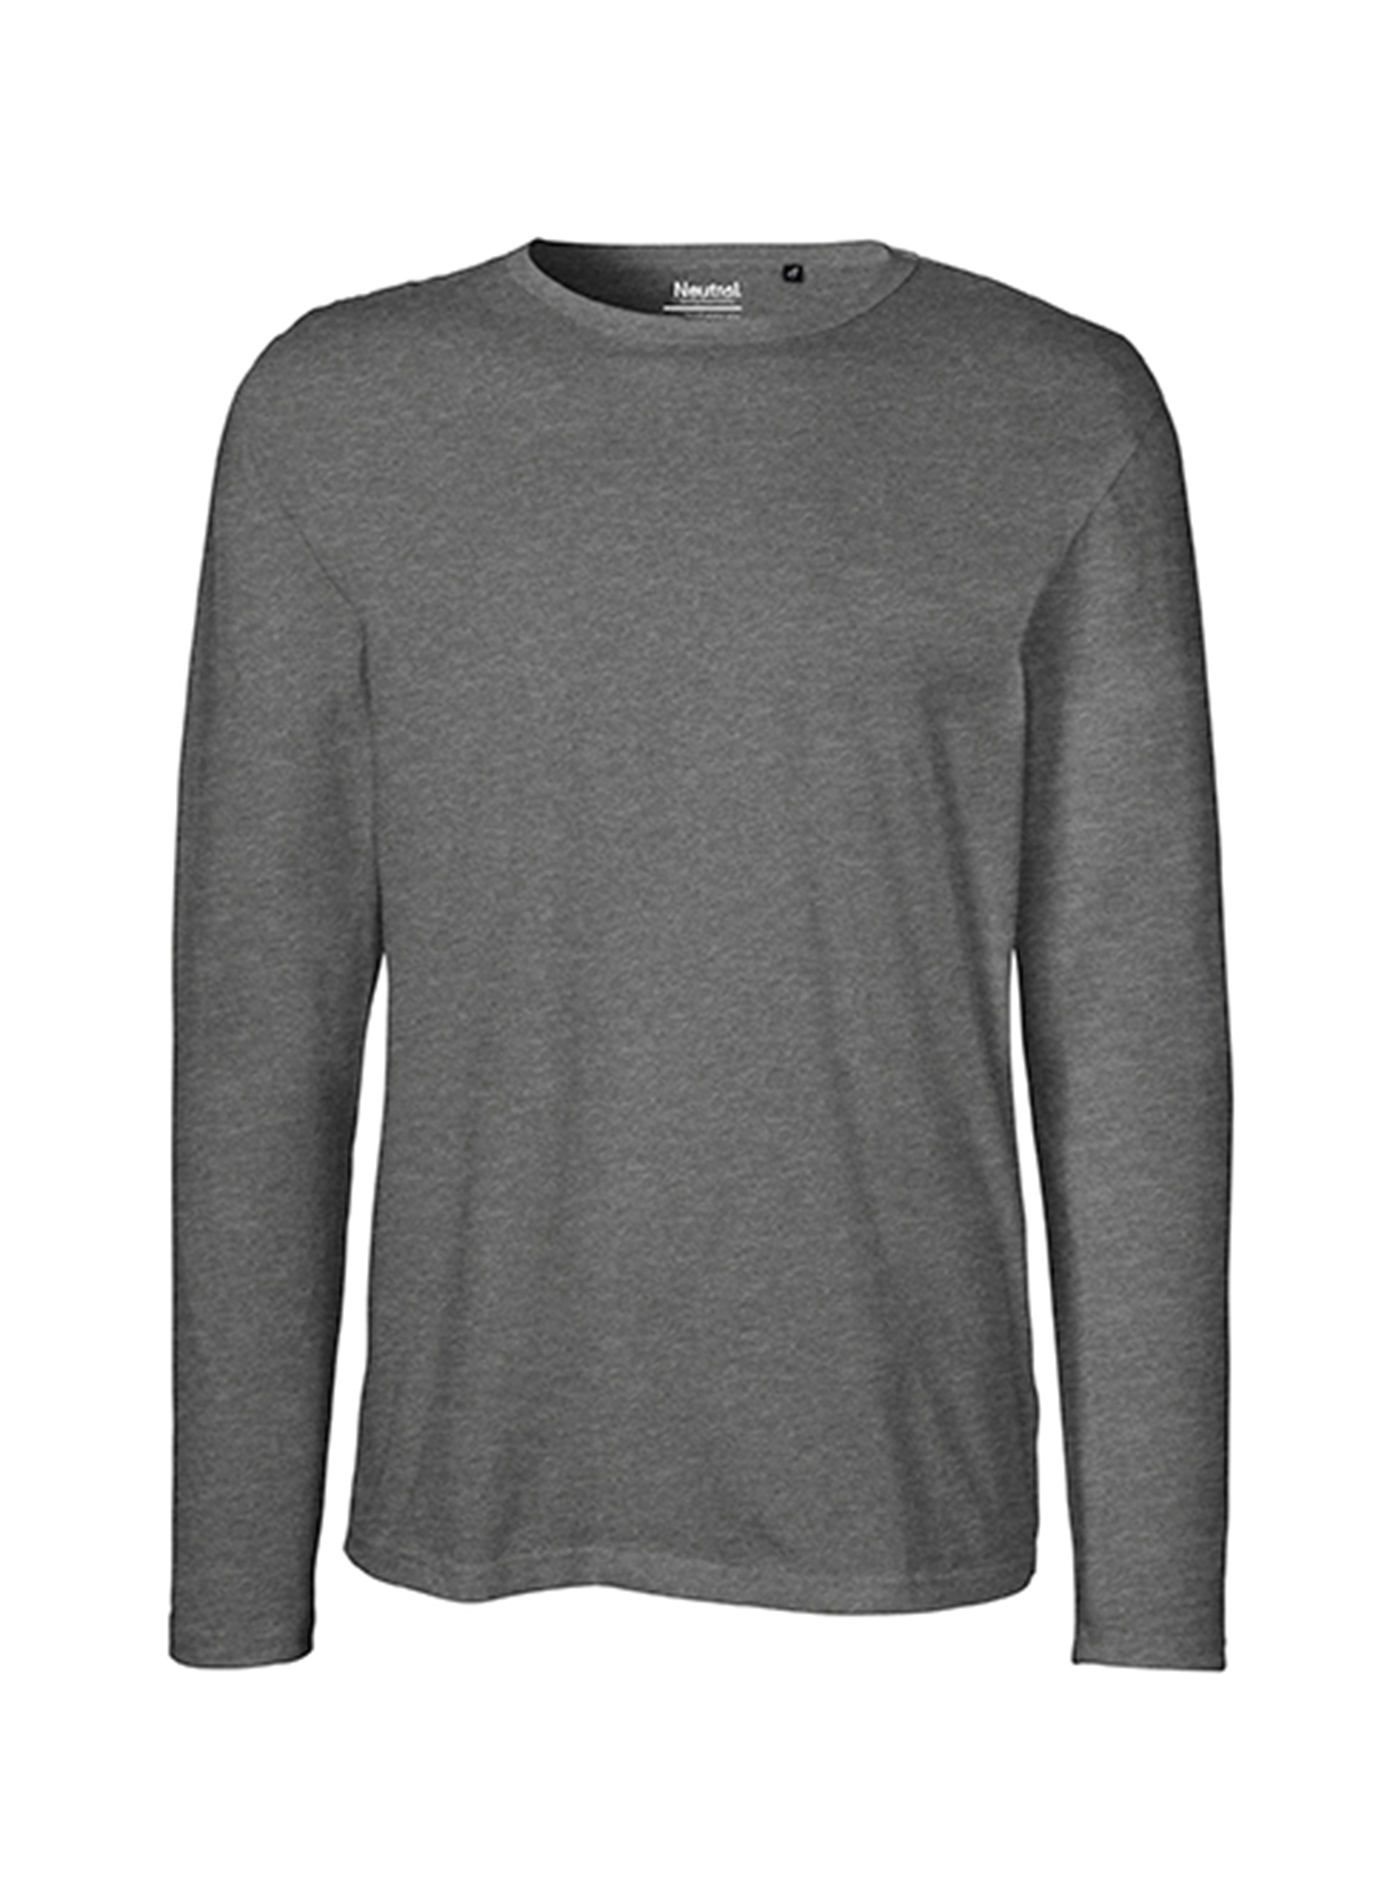 Pánské tričko s dlouhým rukávem Neutral - Tmavě šedá L